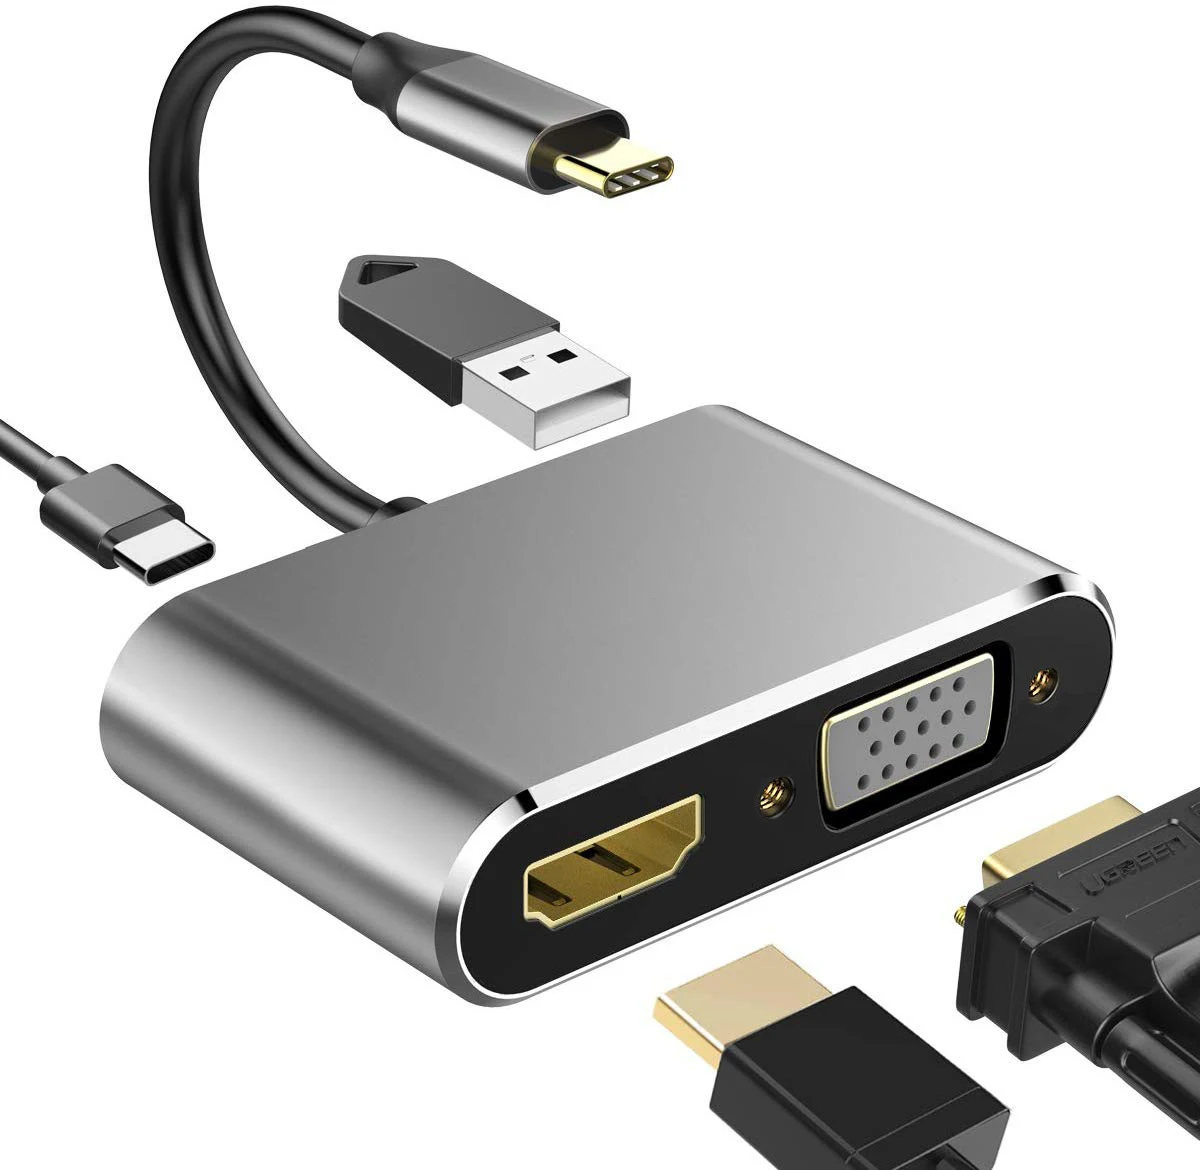 

Adaptador VGA 4 en 1 USB C HD 4K USB 3,1 tipo C USB-C a VGA HD, convertidor de vídeo para Macbook Pro/ iPad Pro